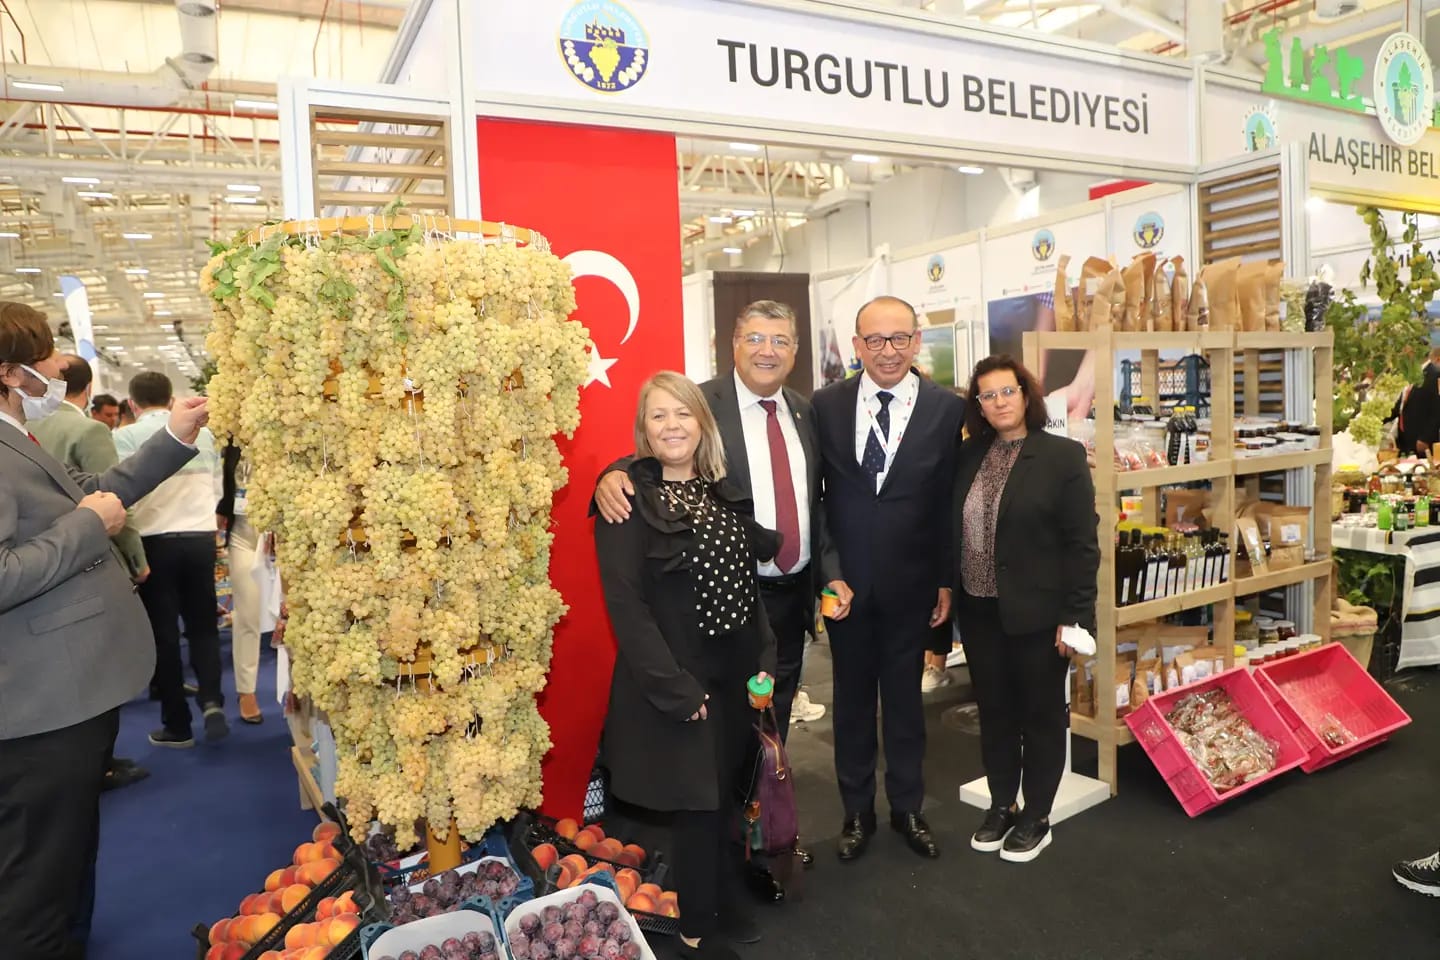 Turgutlu  Belediyesi..  Başka bir tarım mümkün..  Özelkalem Dergisi 142. Sayı..  ozelkalem.com.tr.